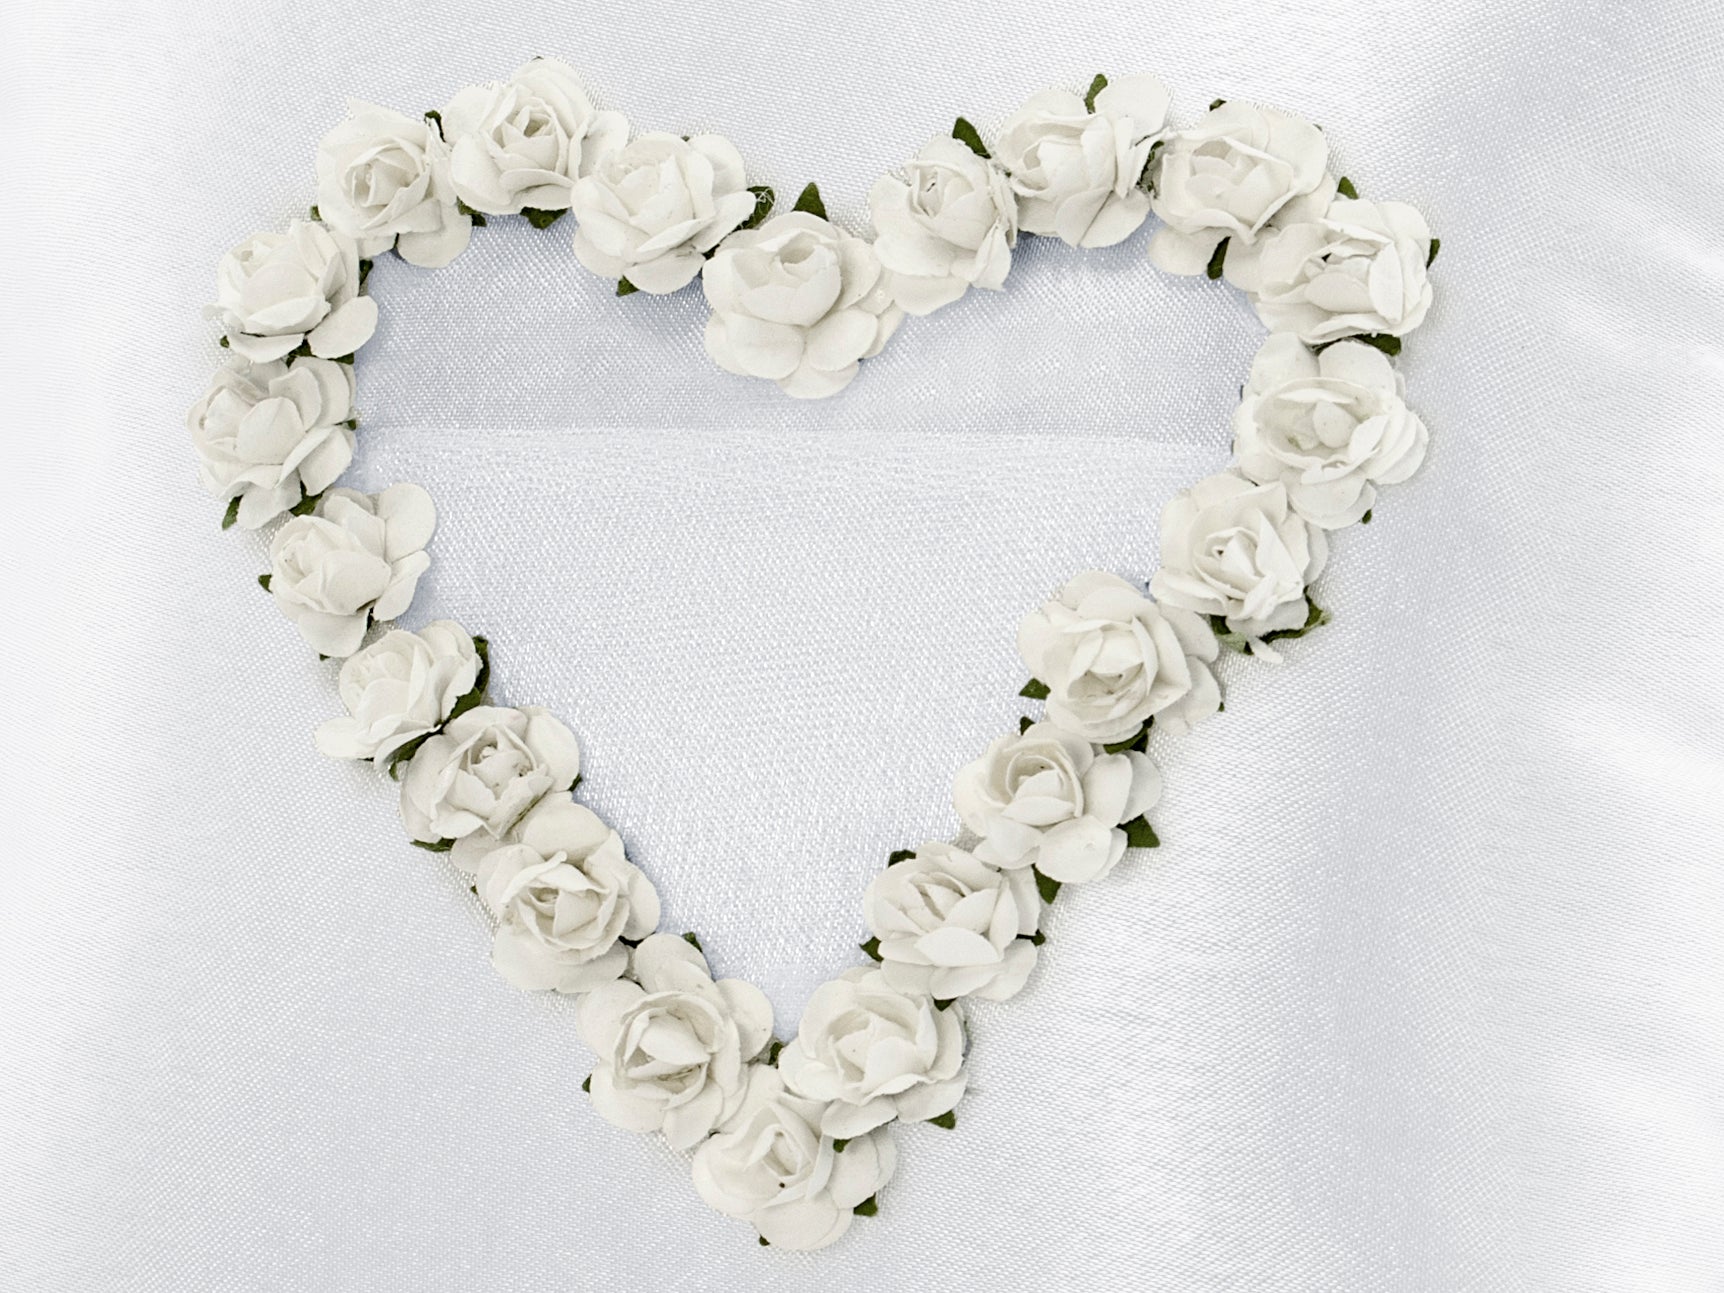 Ring Bearer Pillow White Flowers